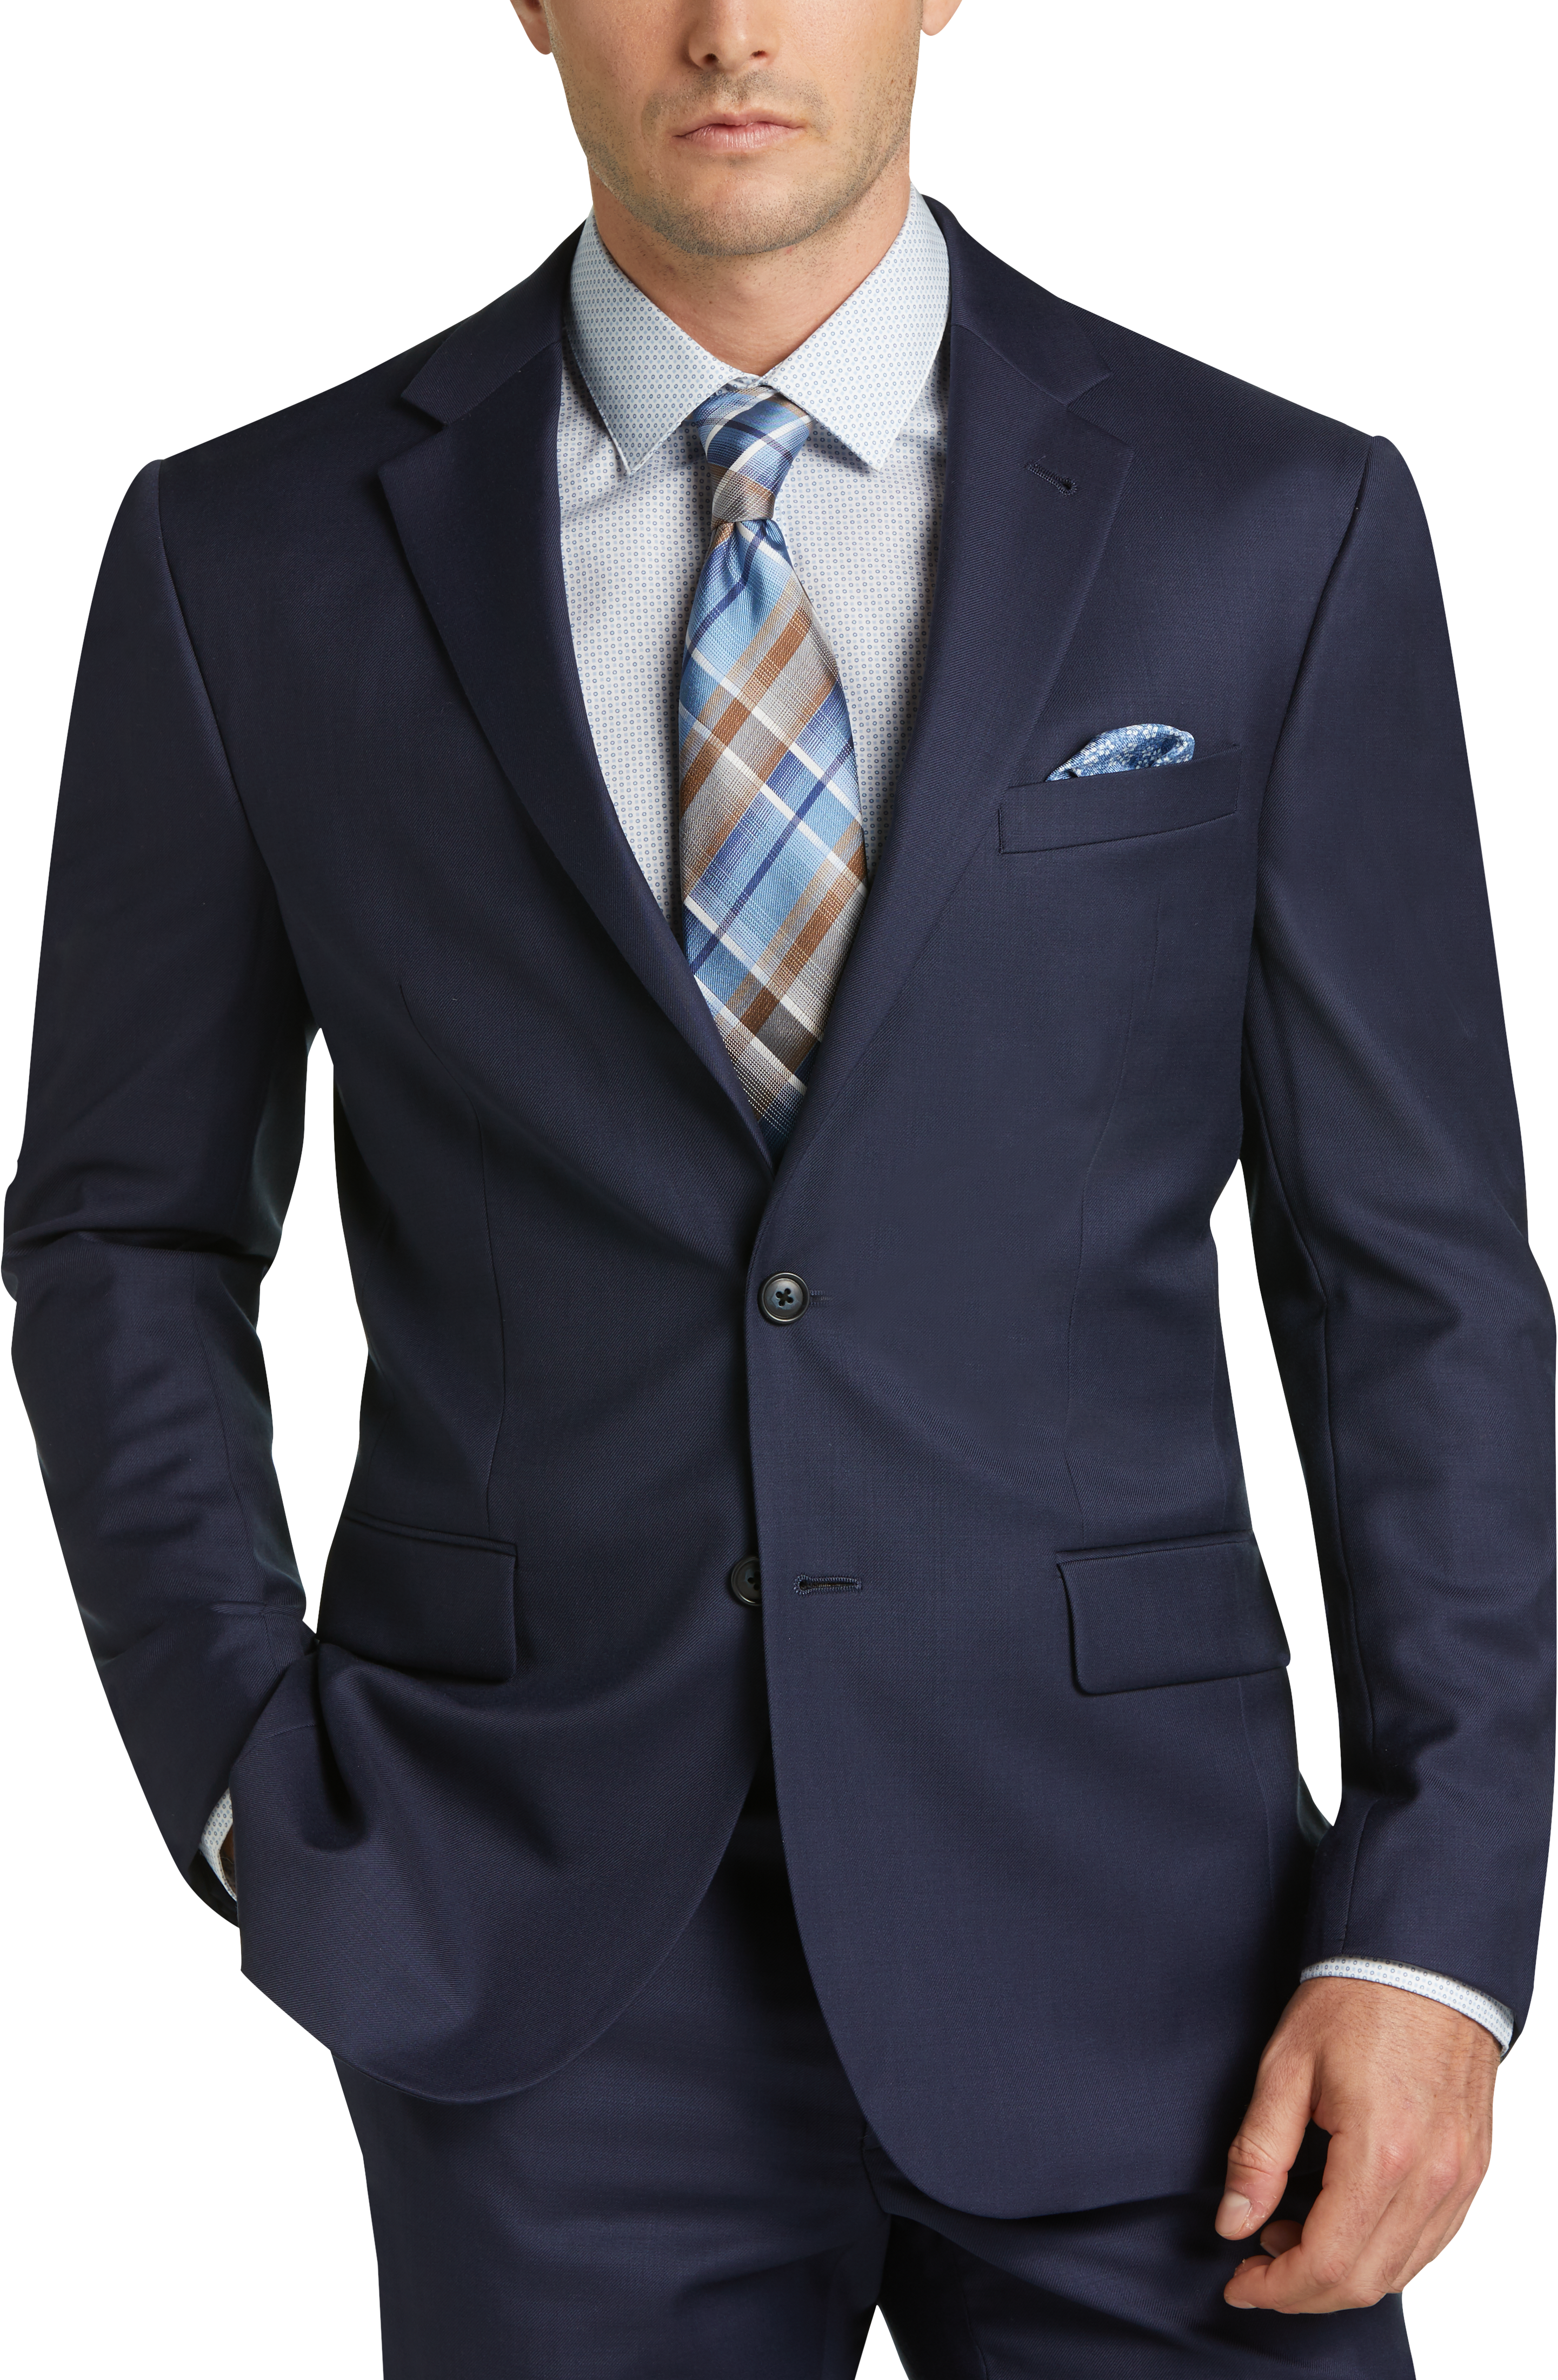 JOE Joseph Abboud Postman Blue Slim Fit Suit - Men's Suits | Men's ...